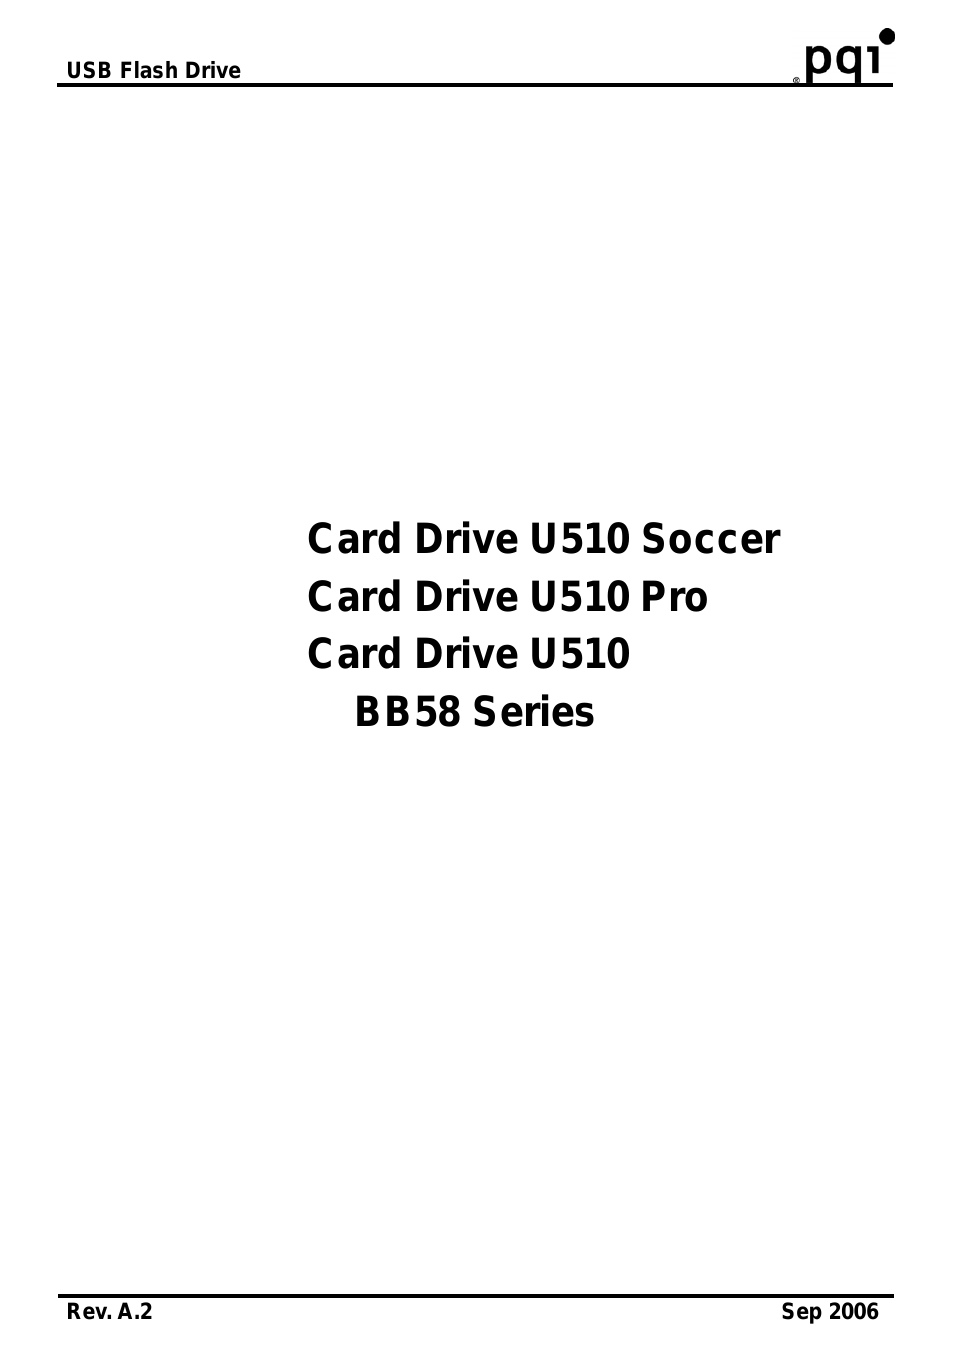 Card Drive U510 Pro